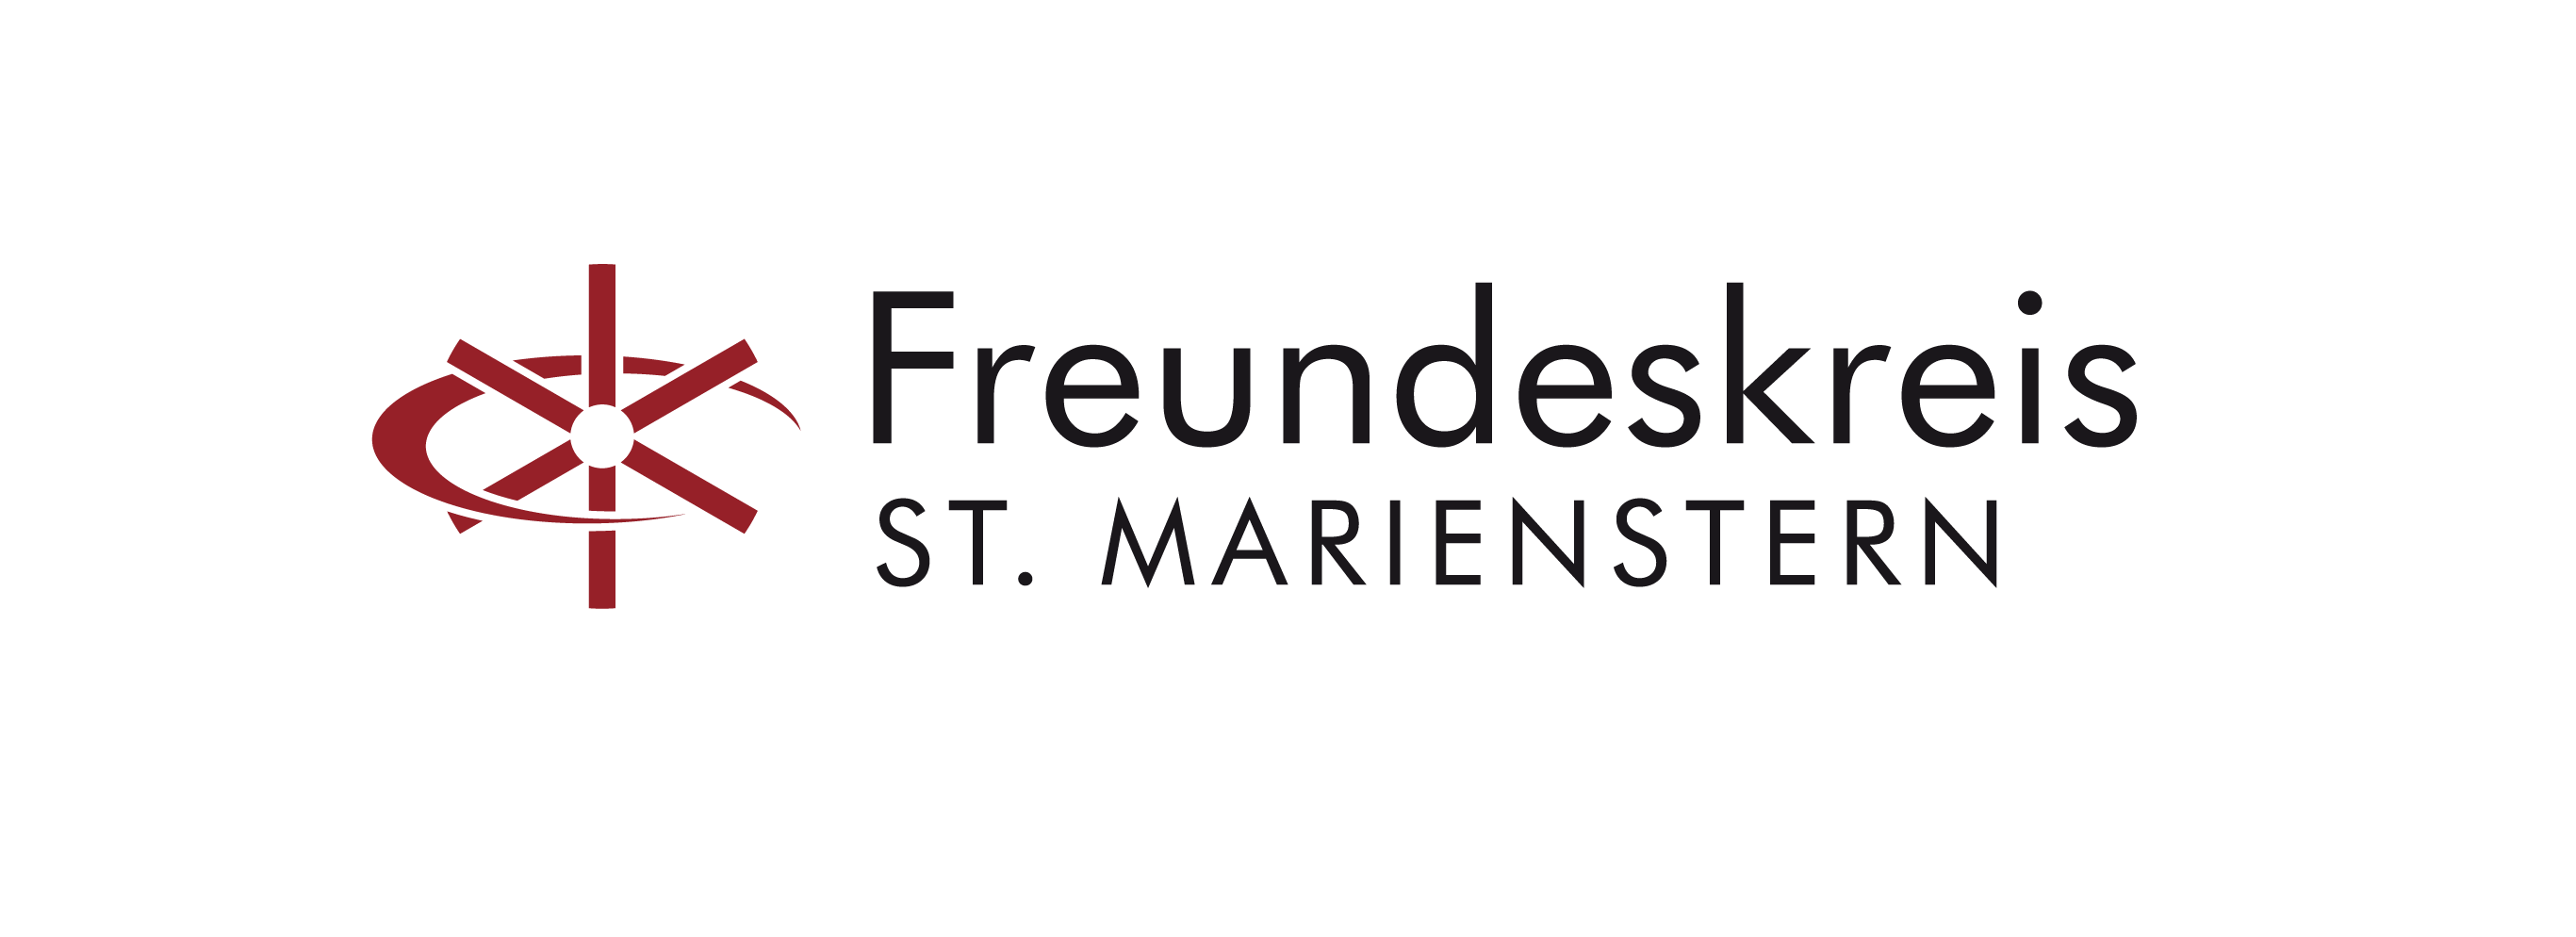  Kloster St. Marienstern Freundeskreis